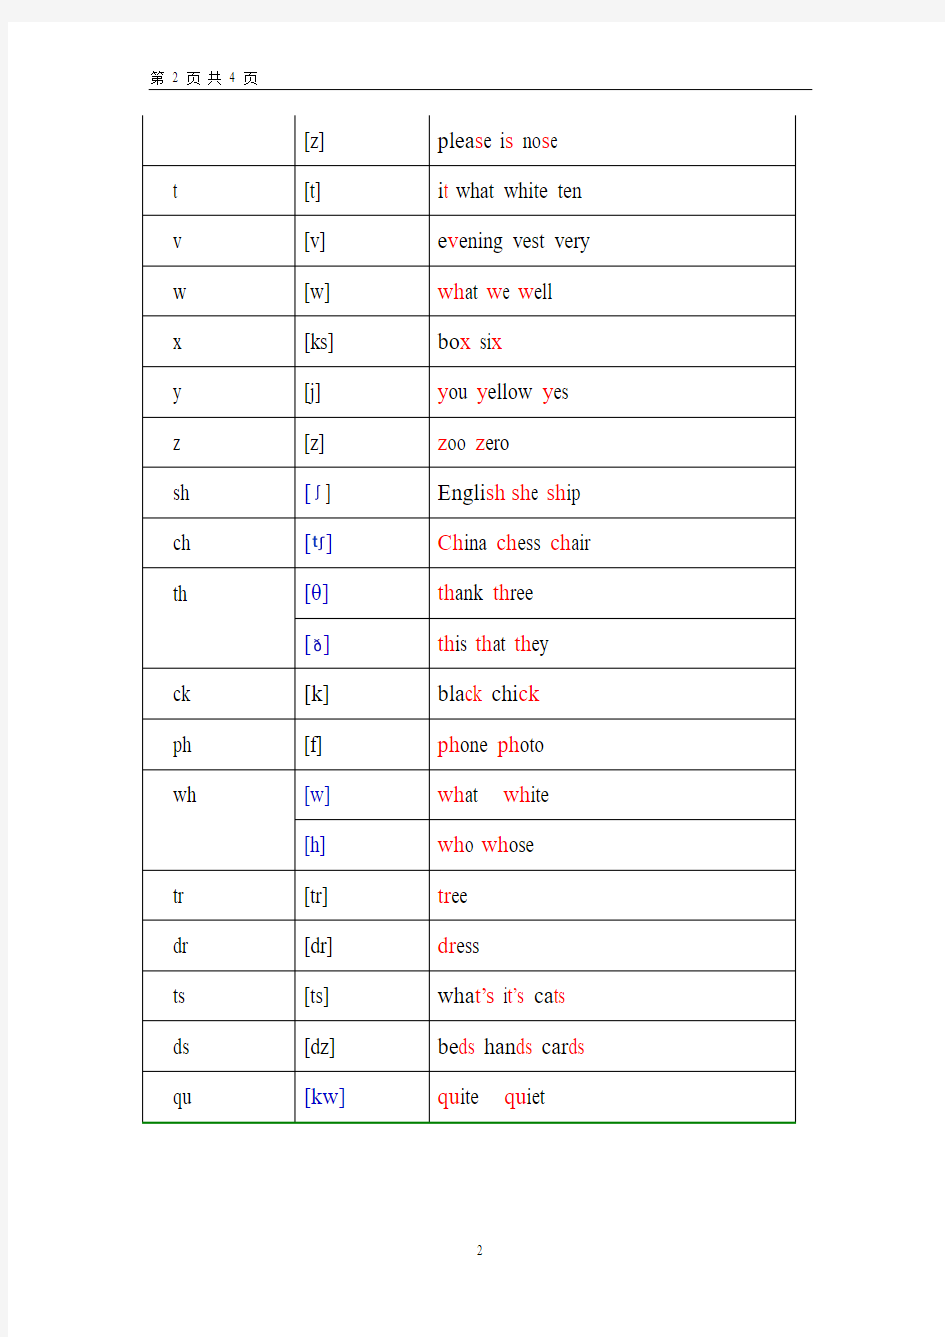 英语元音辅音发音规则表